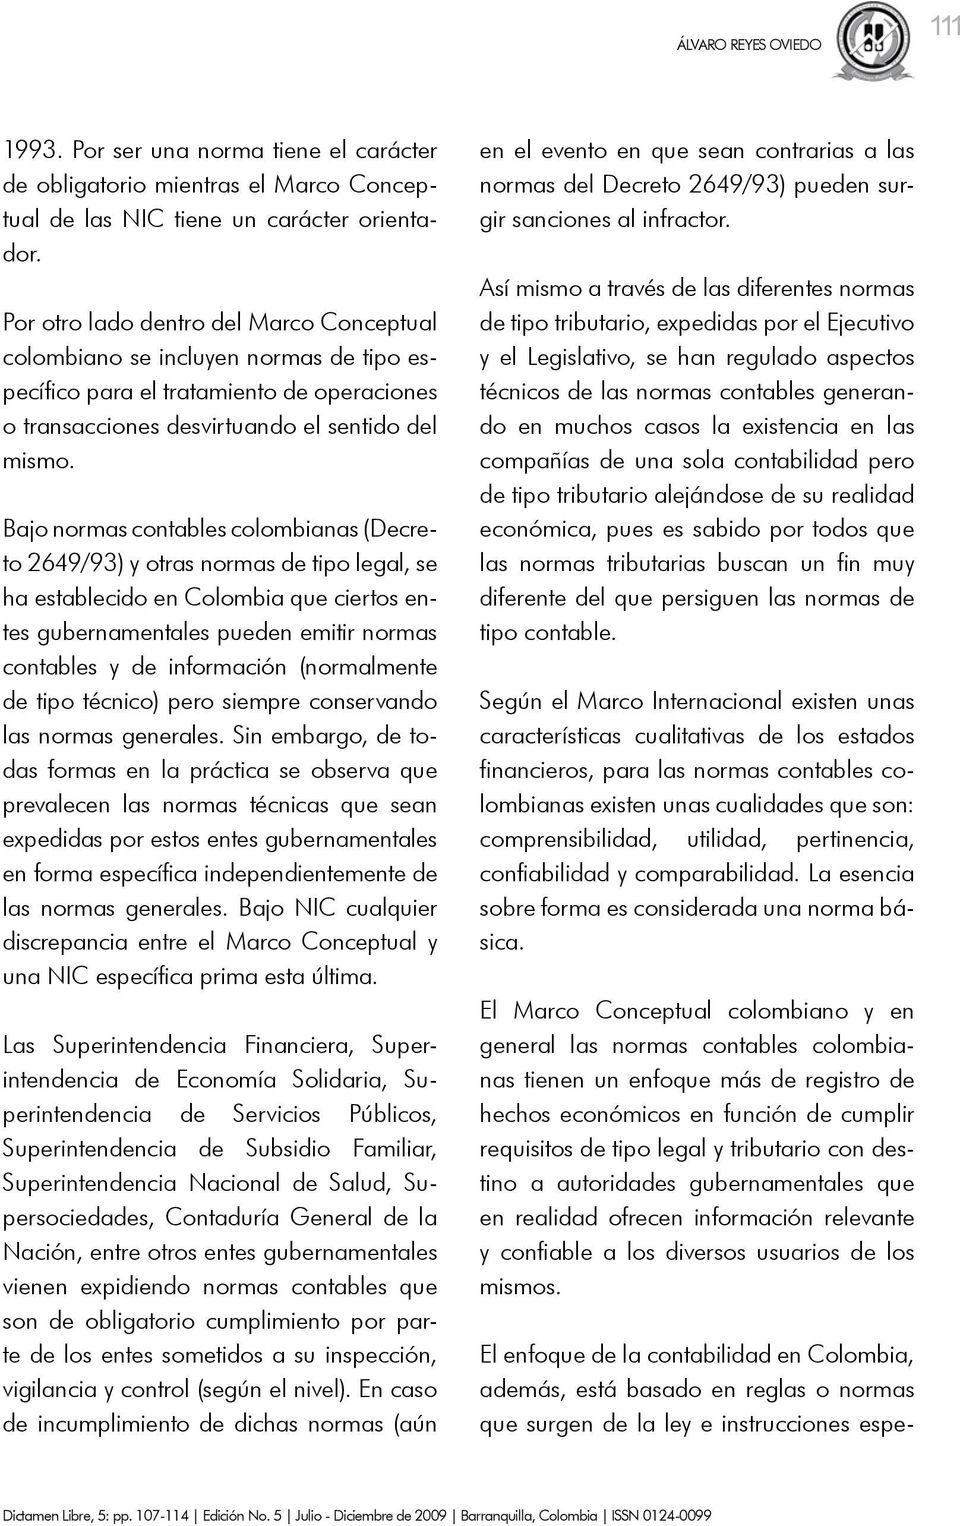 Bajo normas contables colombianas (Decreto 2649/93) y otras normas de tipo legal, se ha establecido en Colombia que ciertos entes gubernamentales pueden emitir normas contables y de información